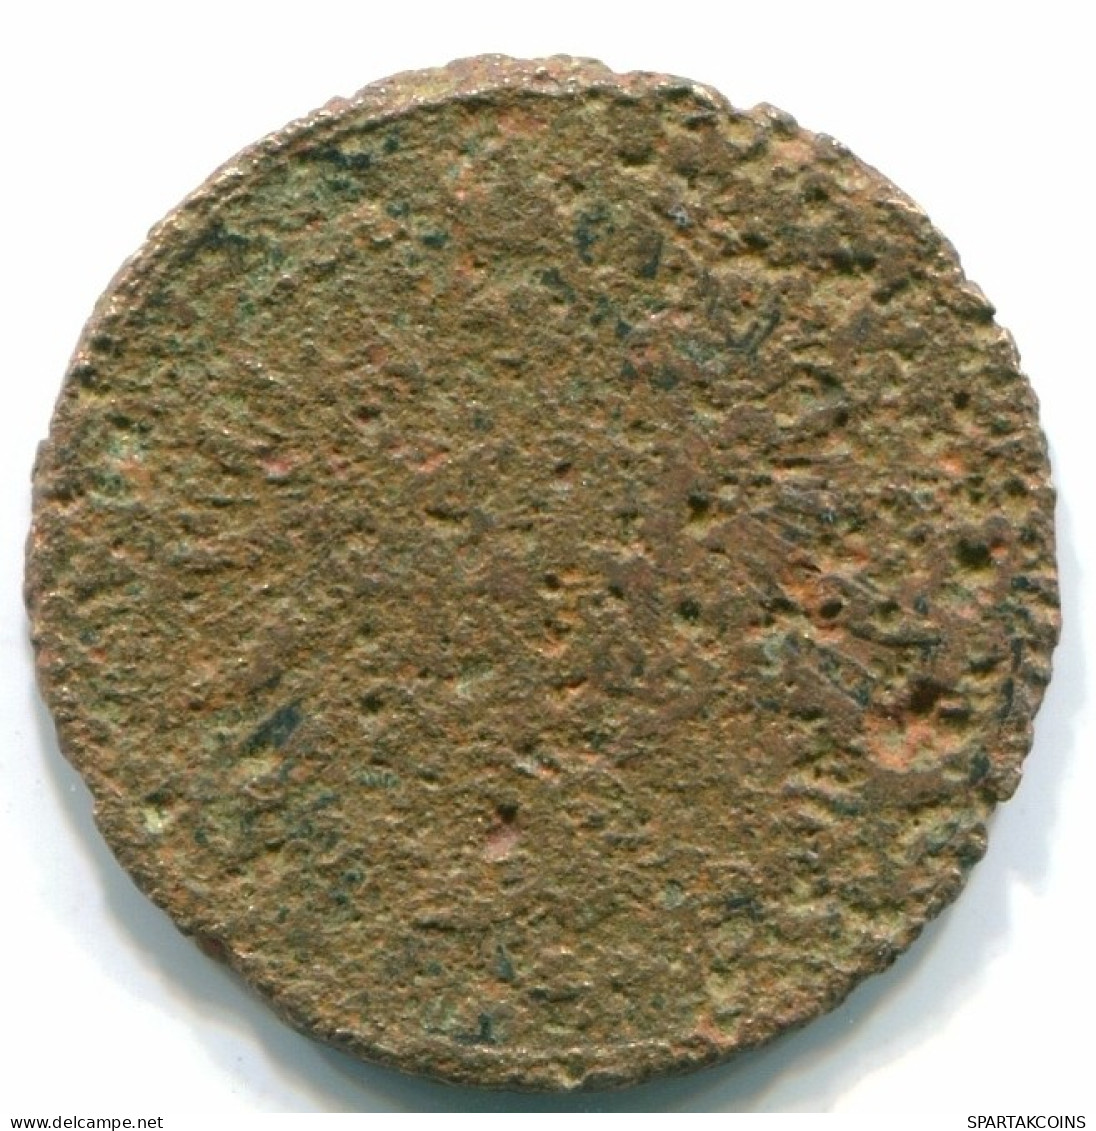 2 PFENNIG 1875 GERMANY Coin #DE10135.3.U.A - 2 Pfennig